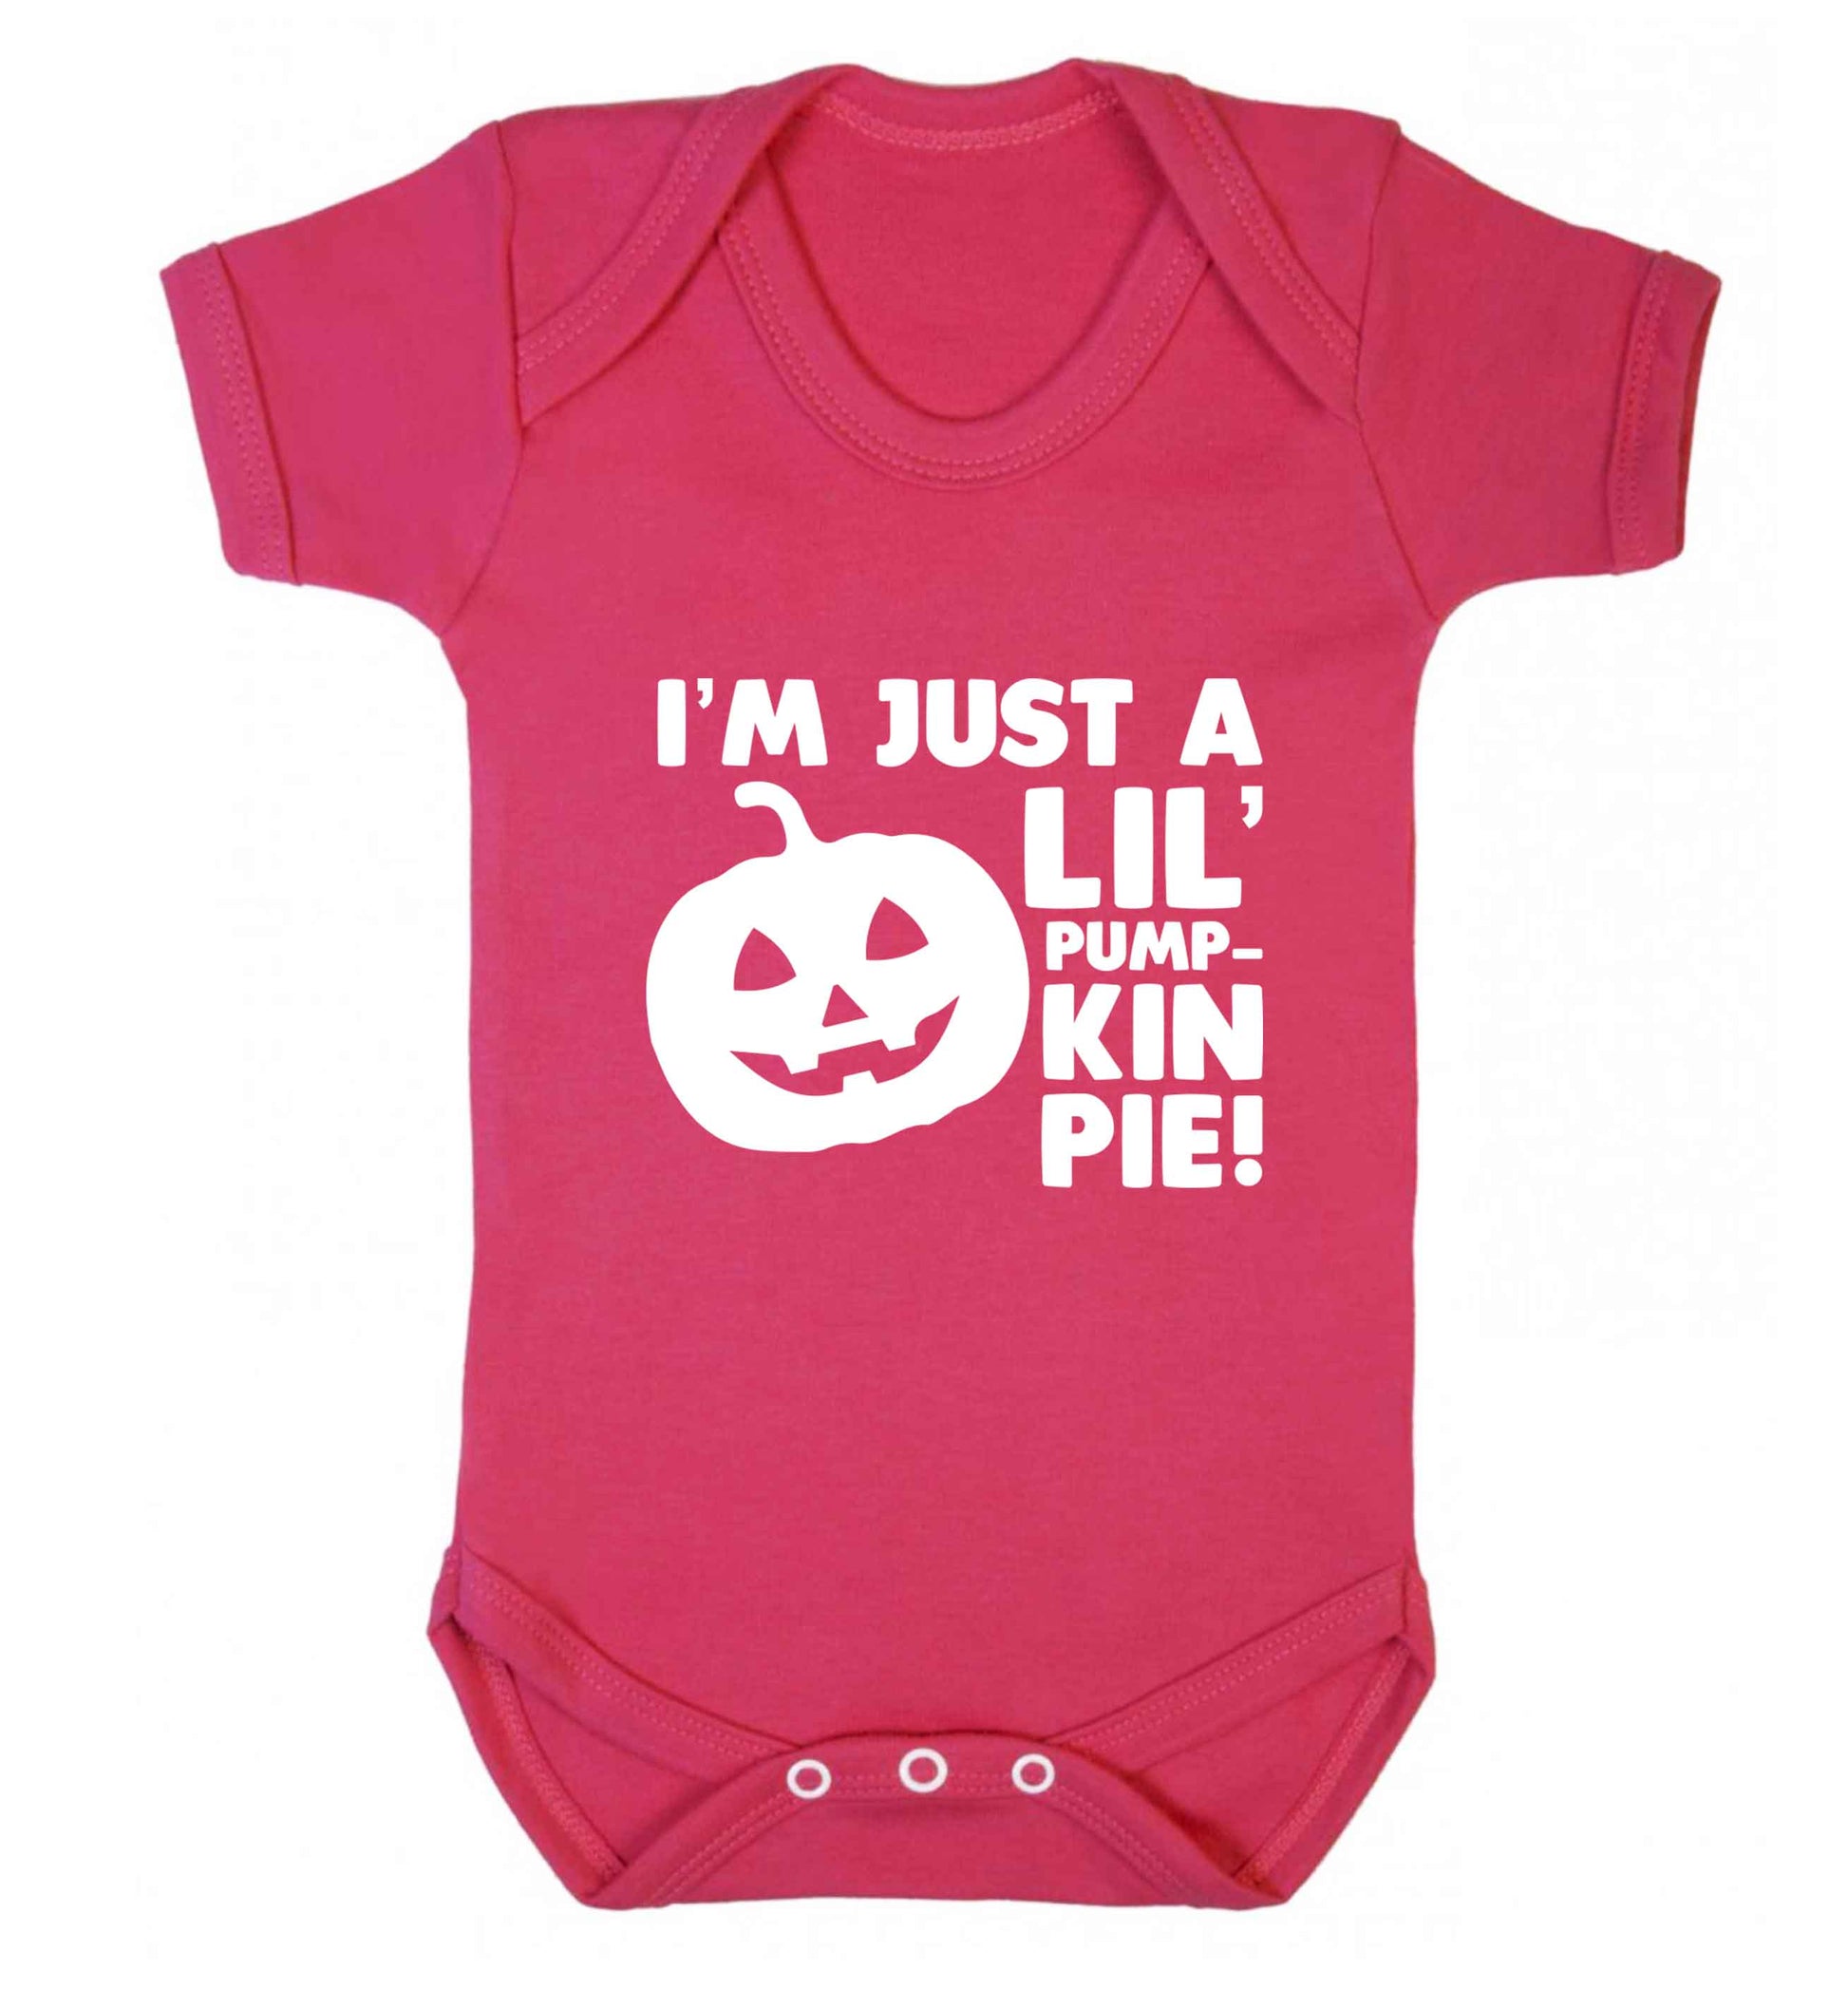 I'm just a lil' pumpkin pie baby vest dark pink 18-24 months